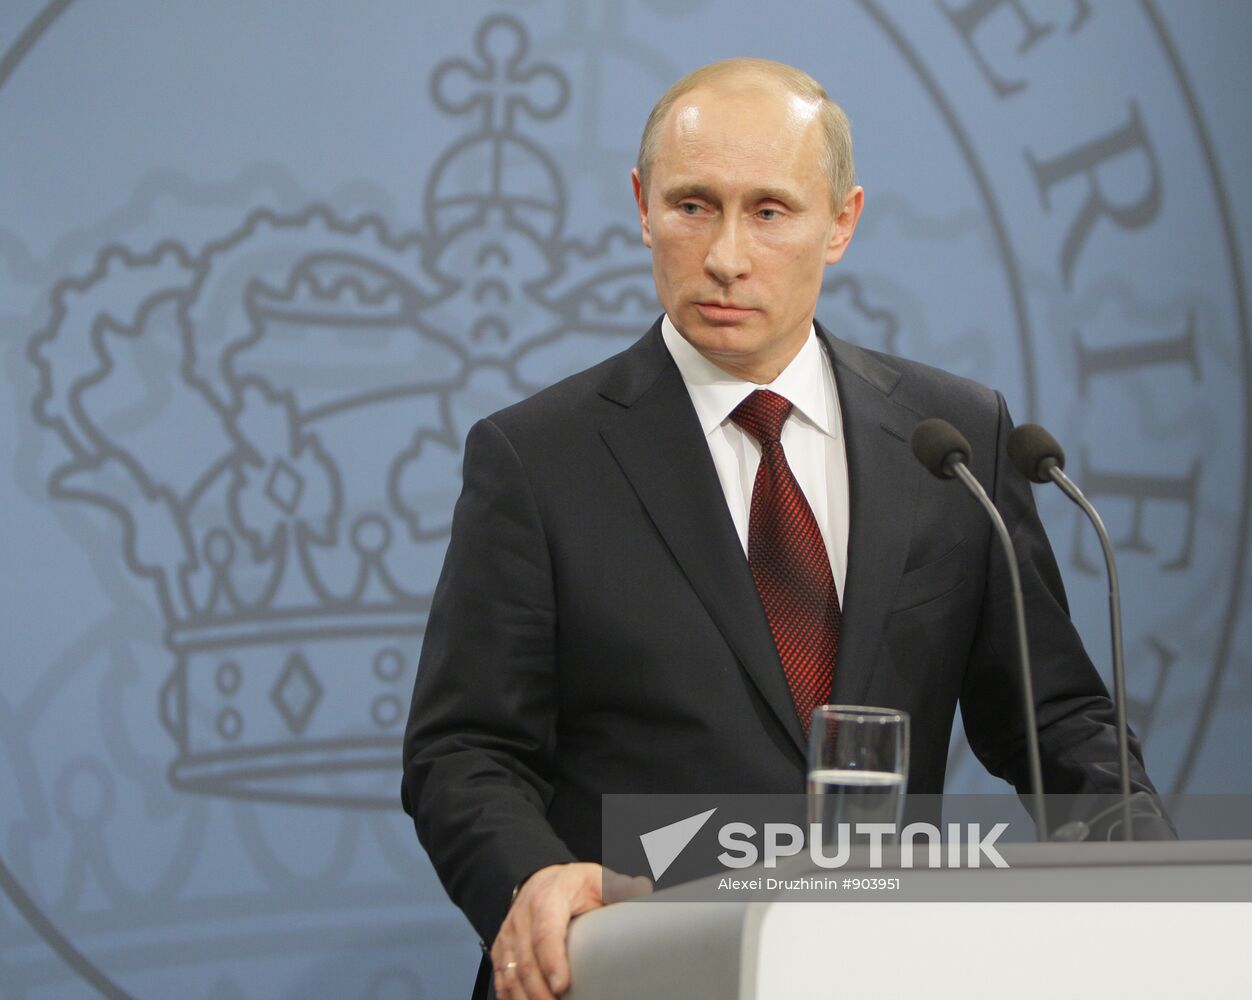 Vladimir Putin arrives in Denmark for one-day visit